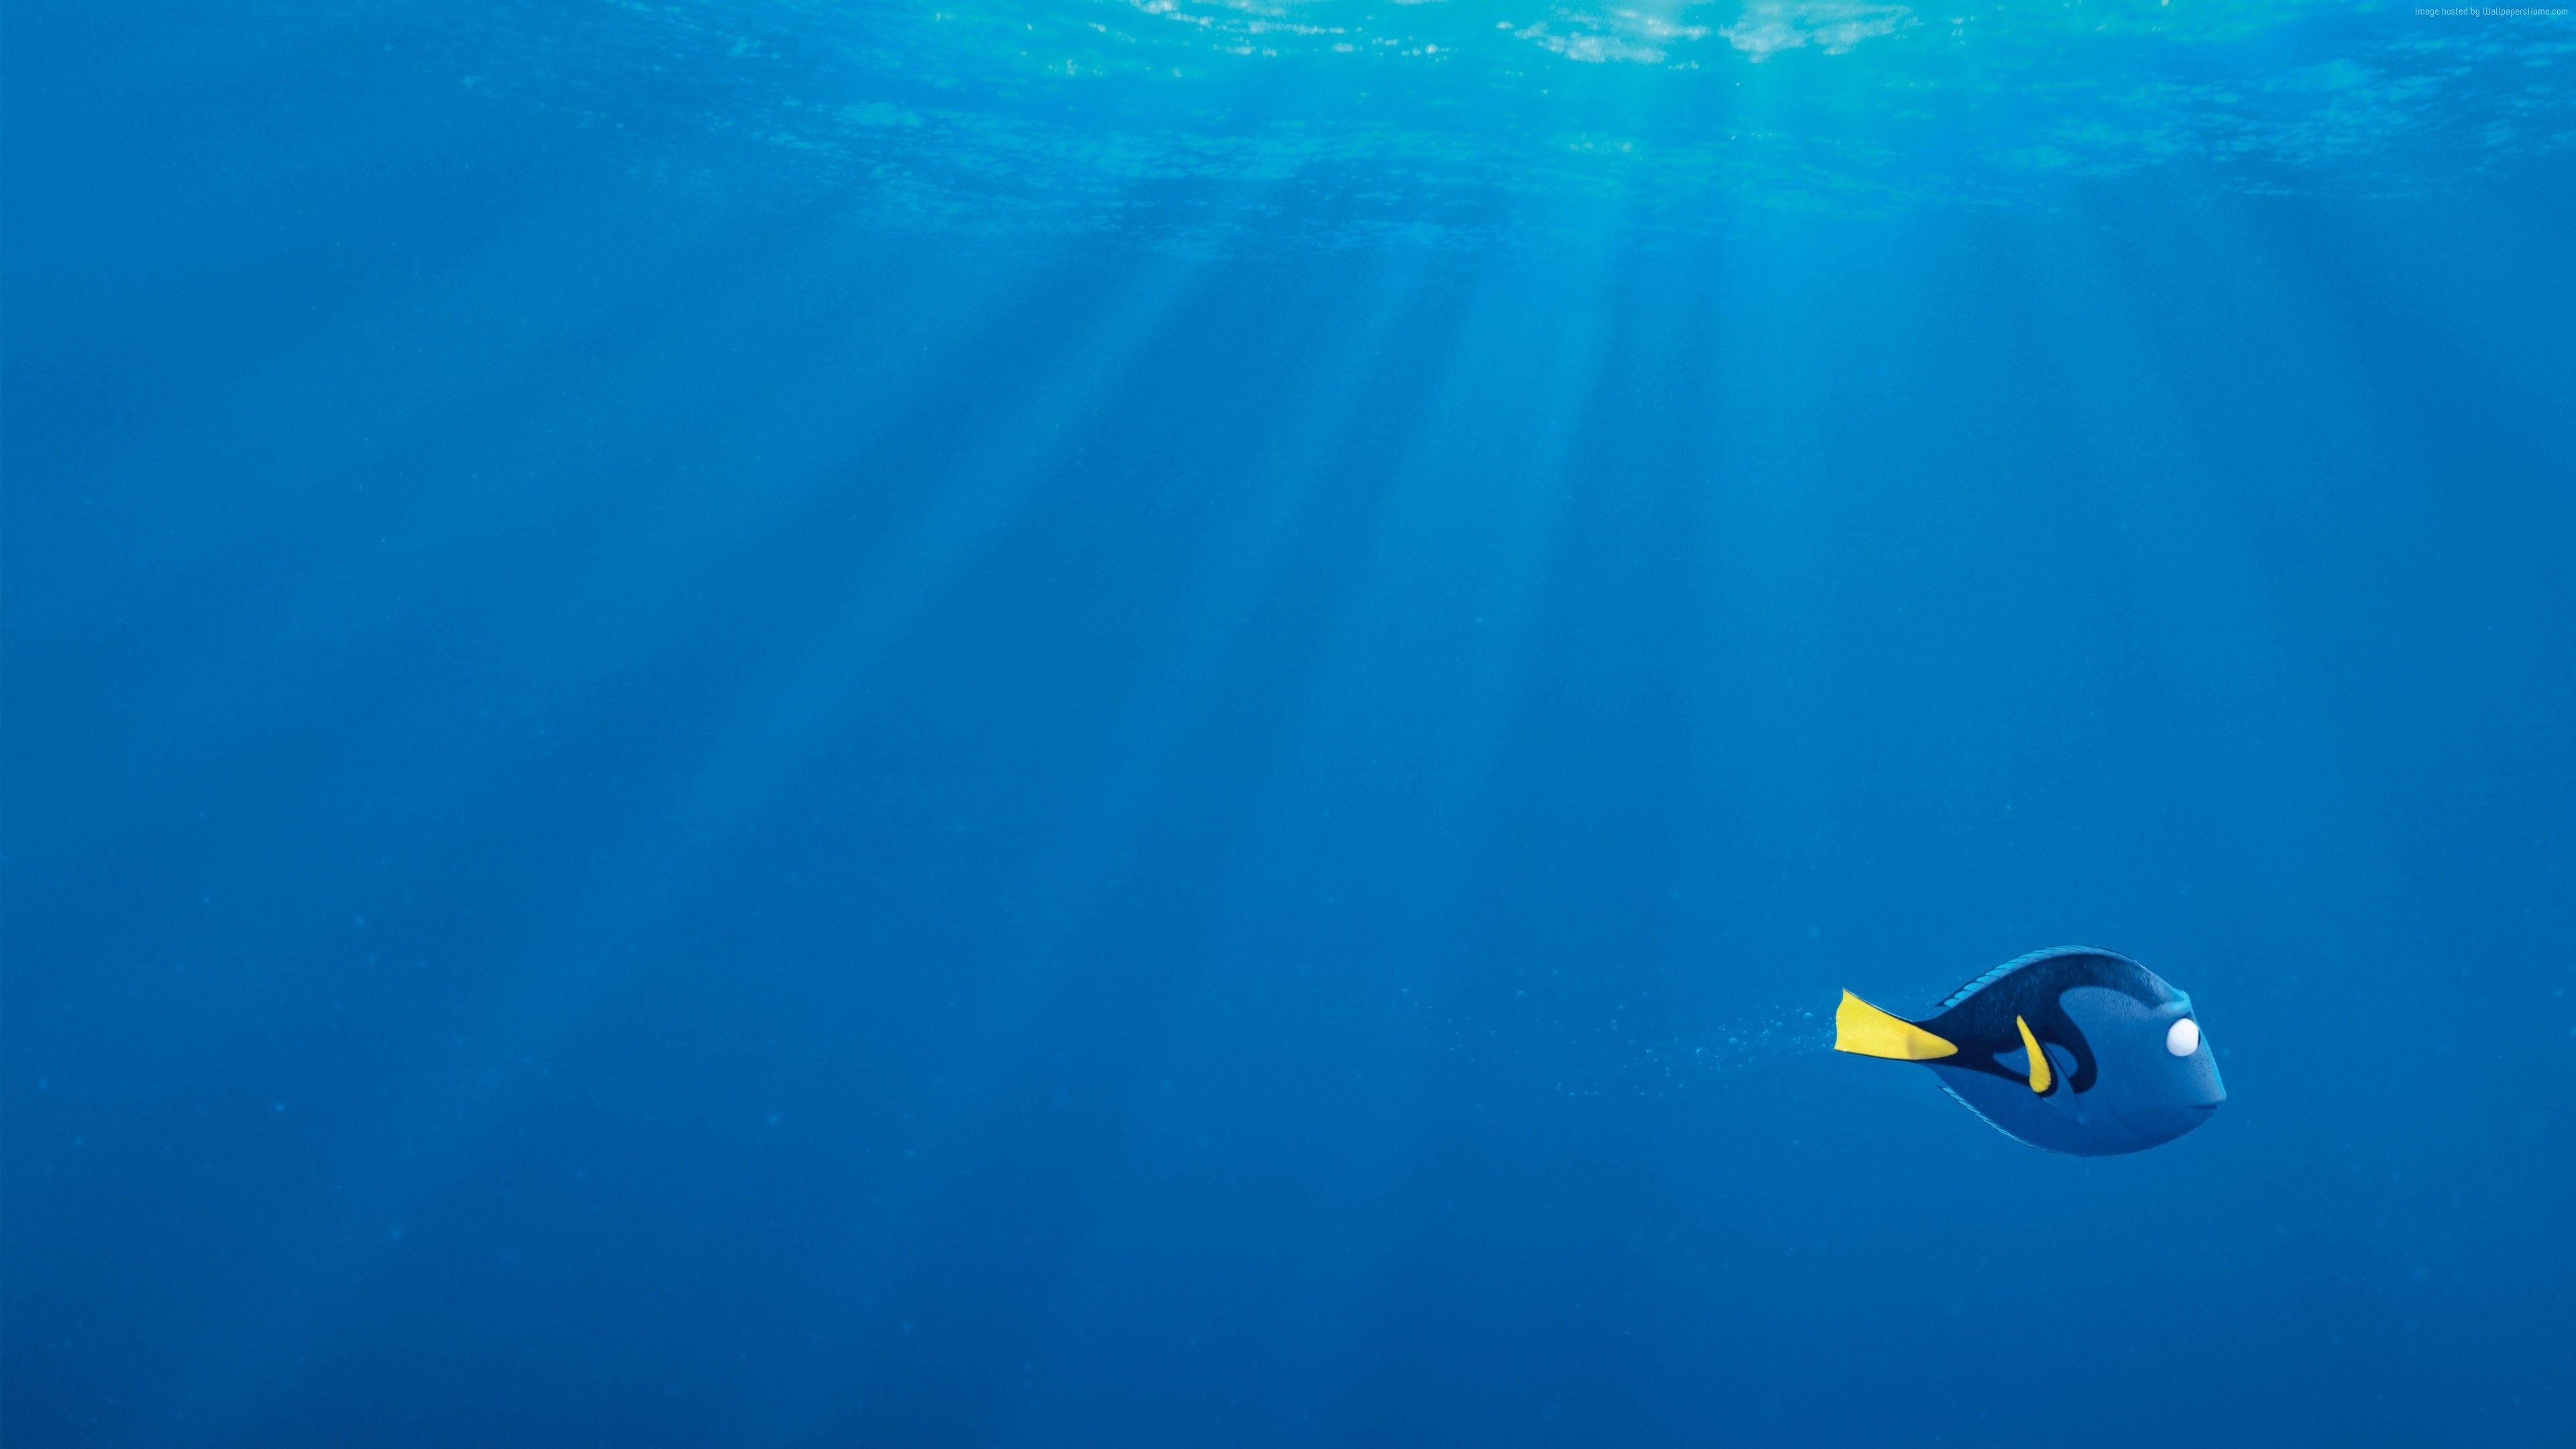 3840x2160 Tải xuống miễn phí Hình nền Tìm kiếm cá mập nemo Dory Pixar [3840x2160] cho Máy tính để bàn, Di động & Máy tính bảng của bạn.  Khám phá Tìm hình nền Dory.  Hình nền Finding Dory, Hình nền Dory, Hình nền Finding Nemo